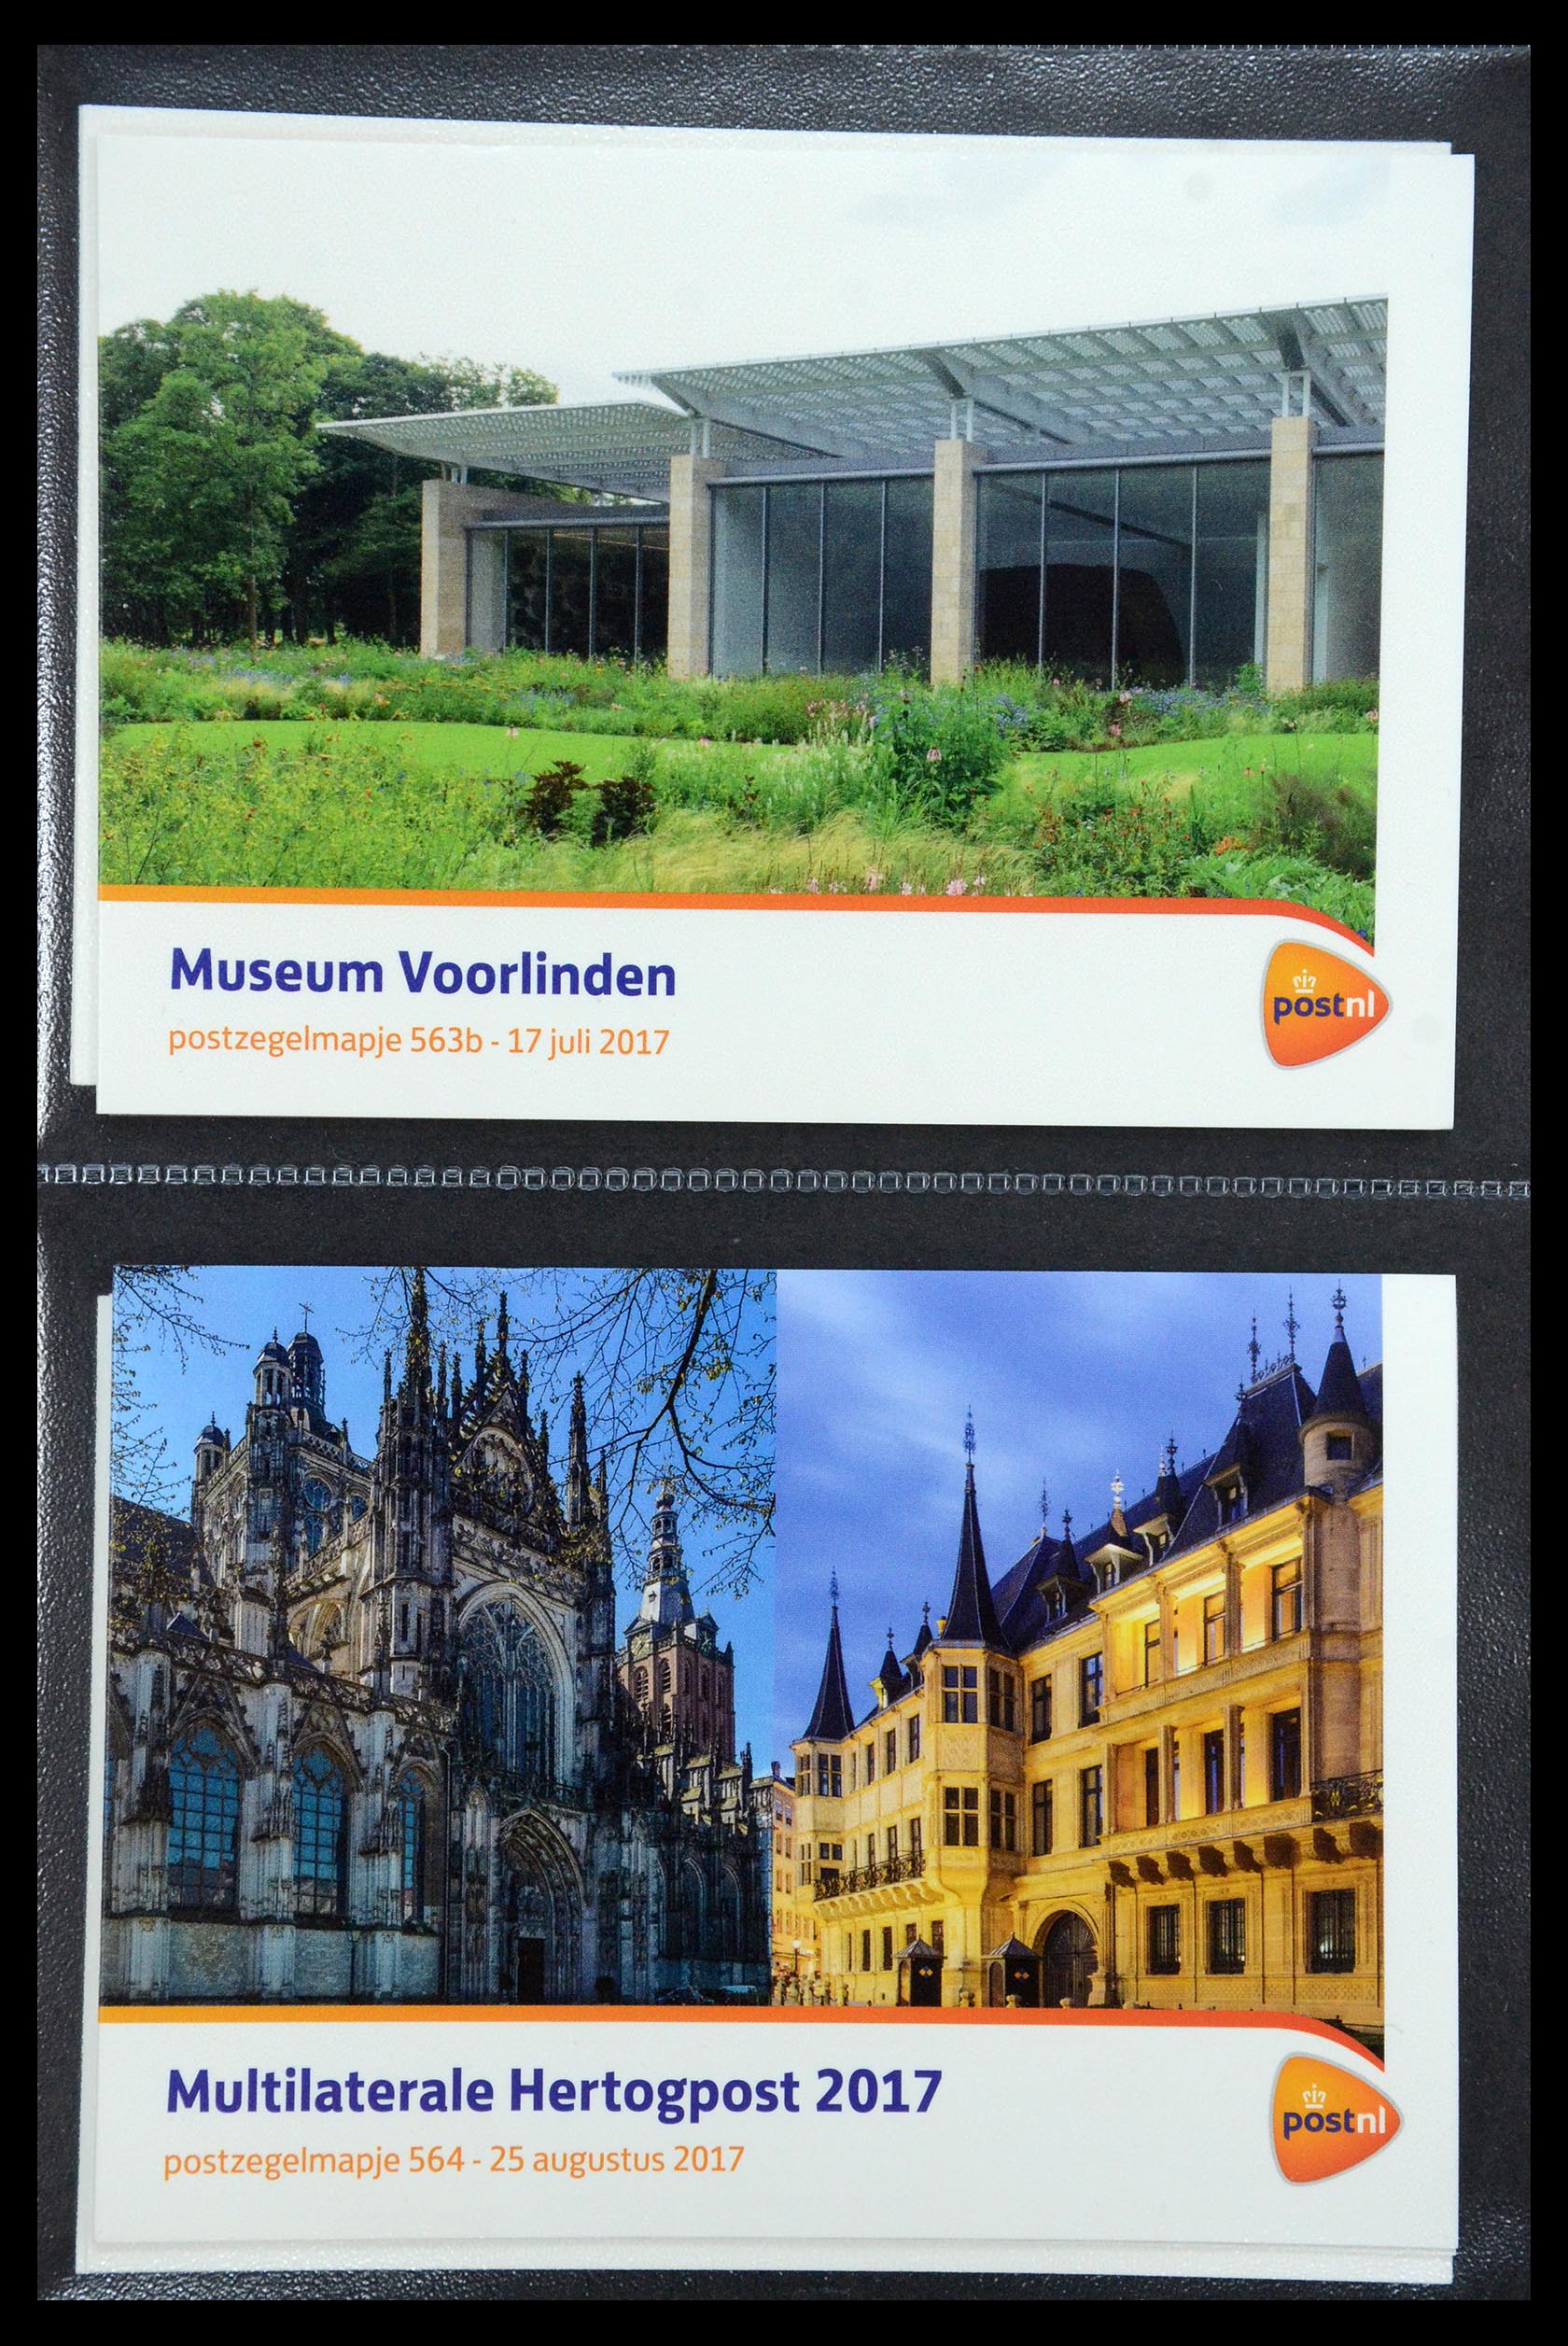 35187 338 - Stamp Collection 35187 Netherlands PTT presentation packs 1982-2019!